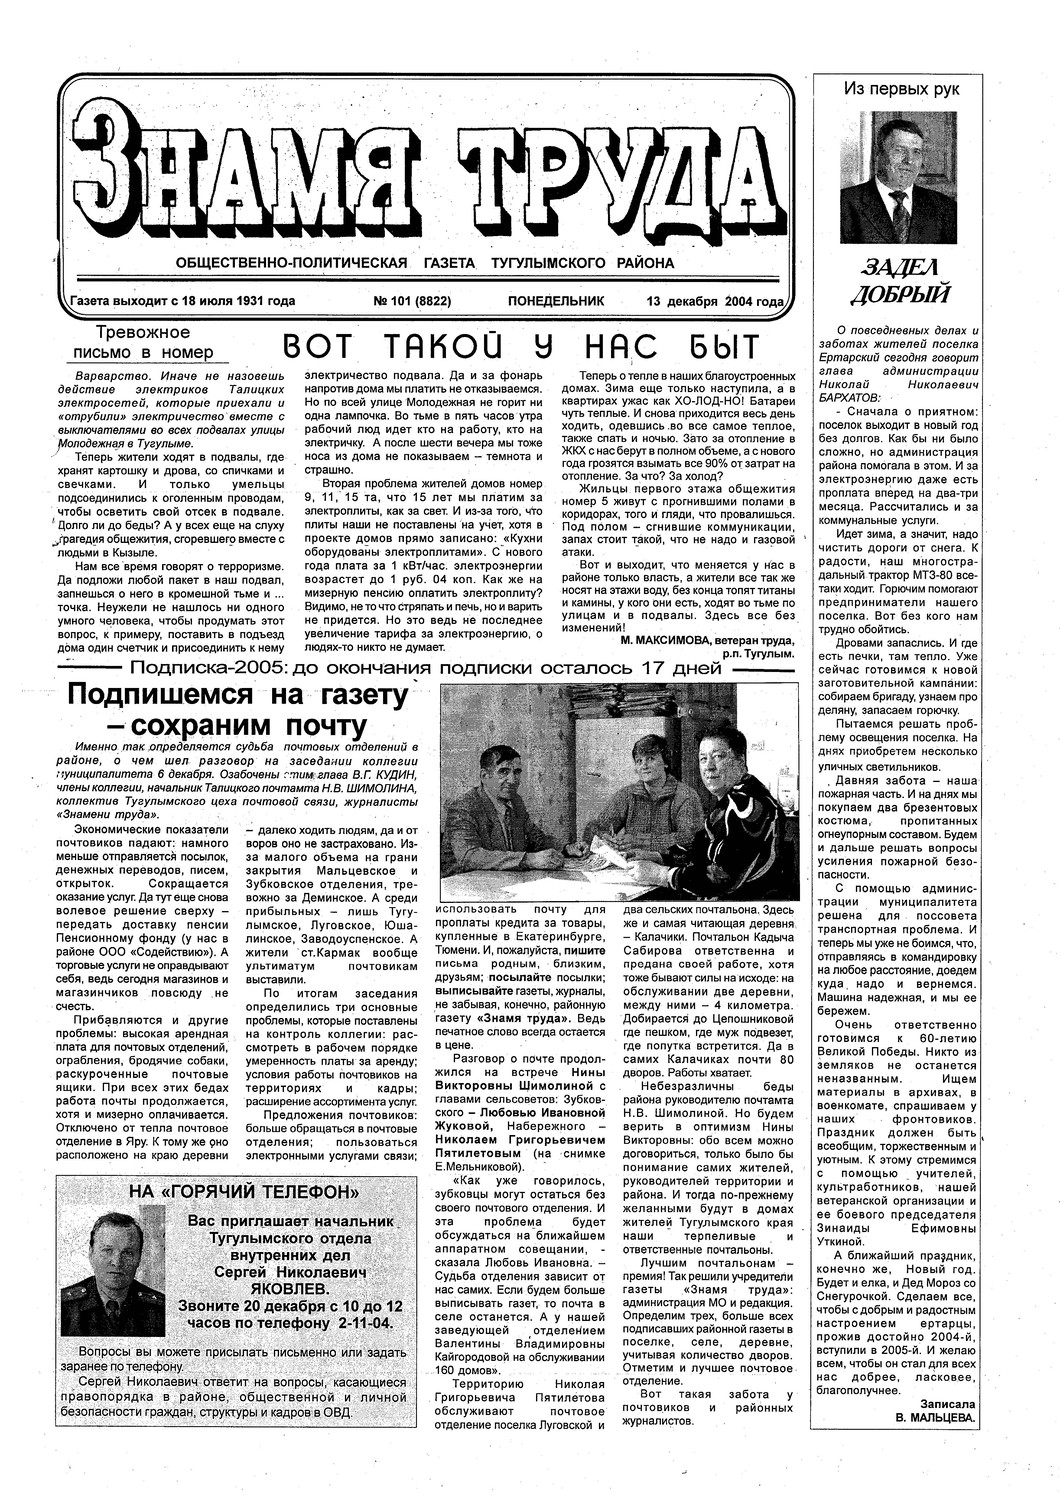 Знамя труда №101 от 13 декабря 2004г.